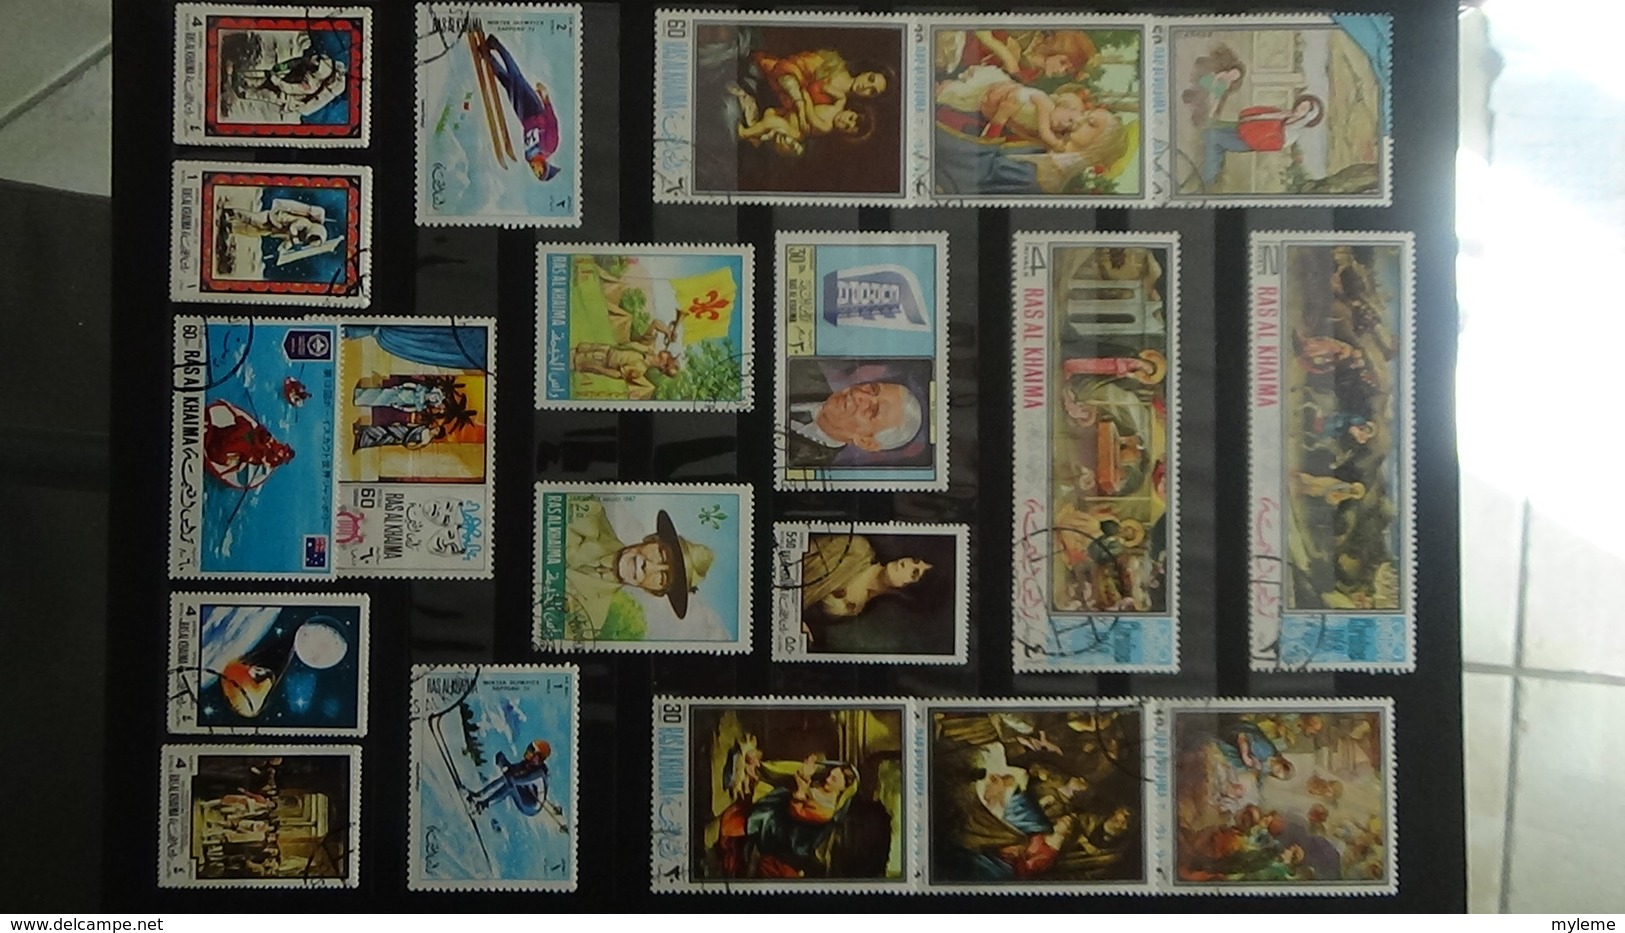 Beaux blocs ** et timbres tous étas de CHINE et tous pays